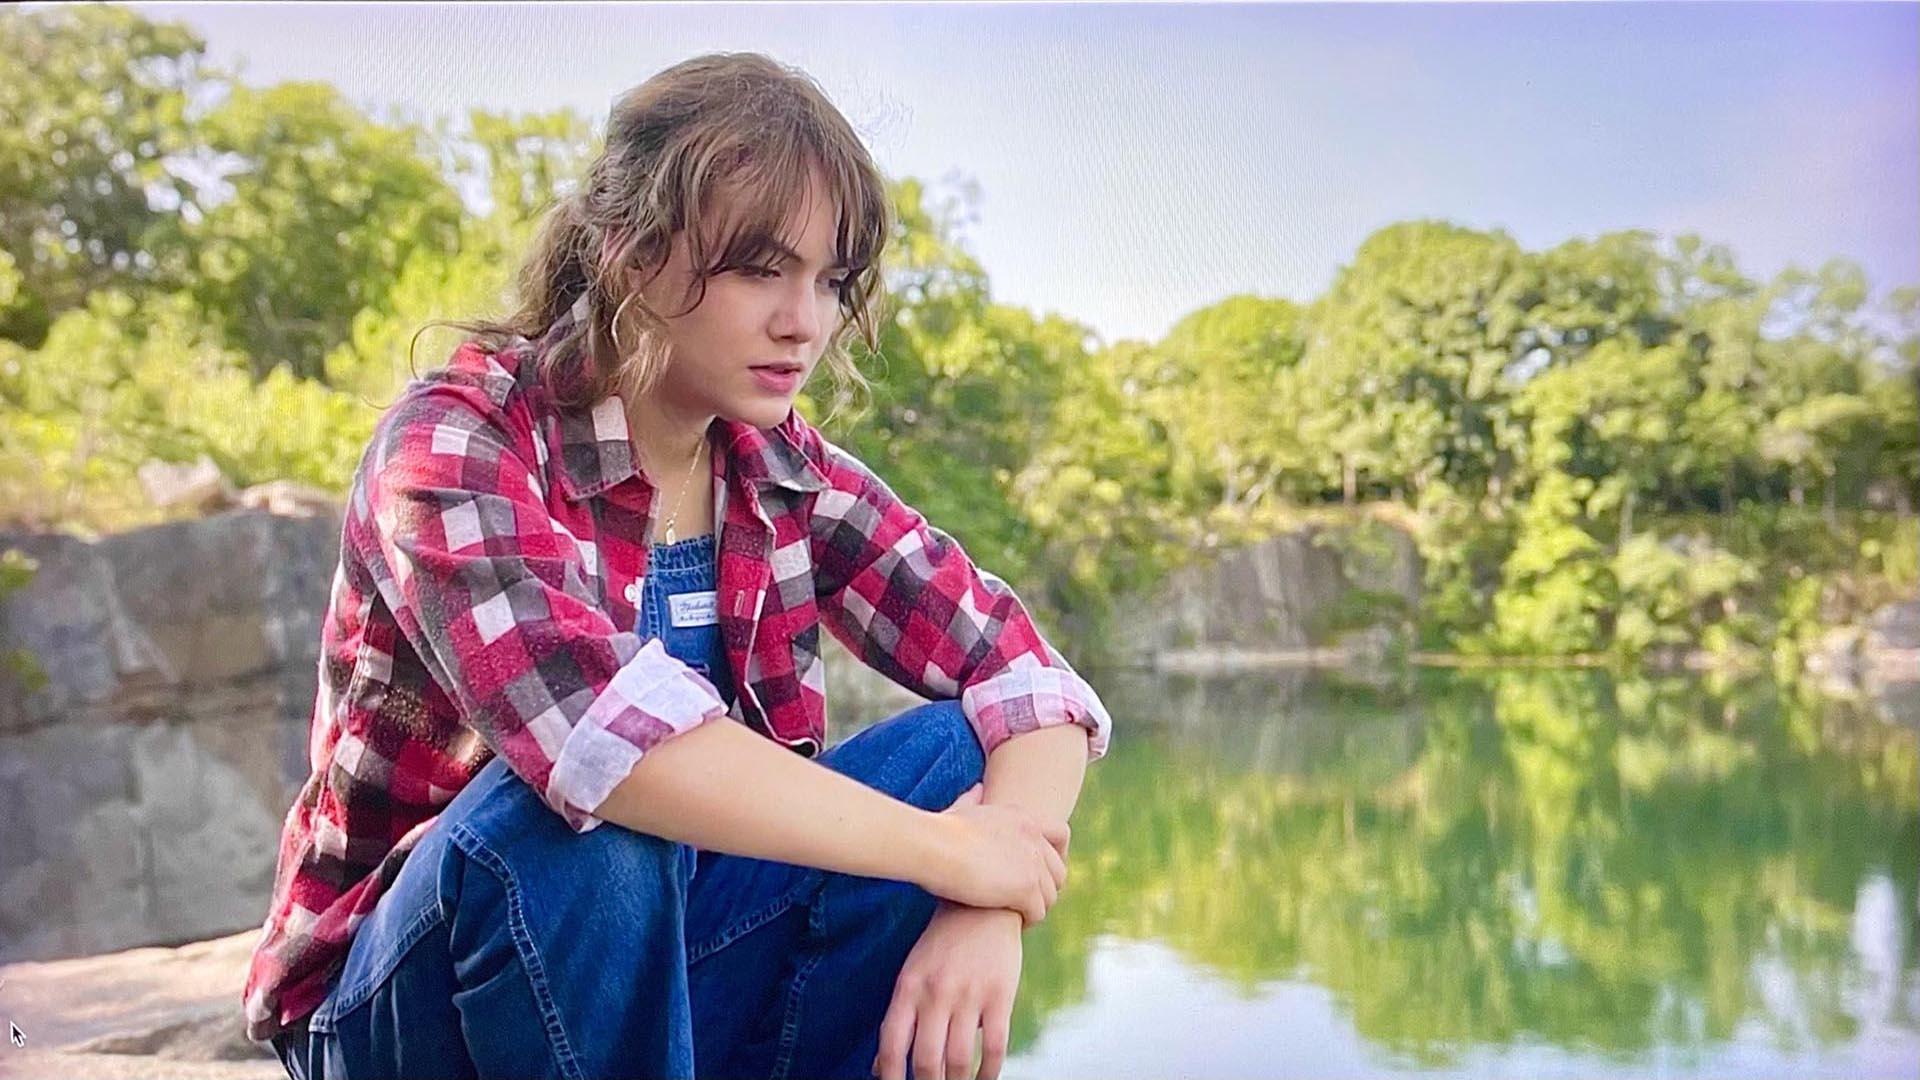 روبی خشمگین در کنار دریاچه نشسته است در فیلم کودا